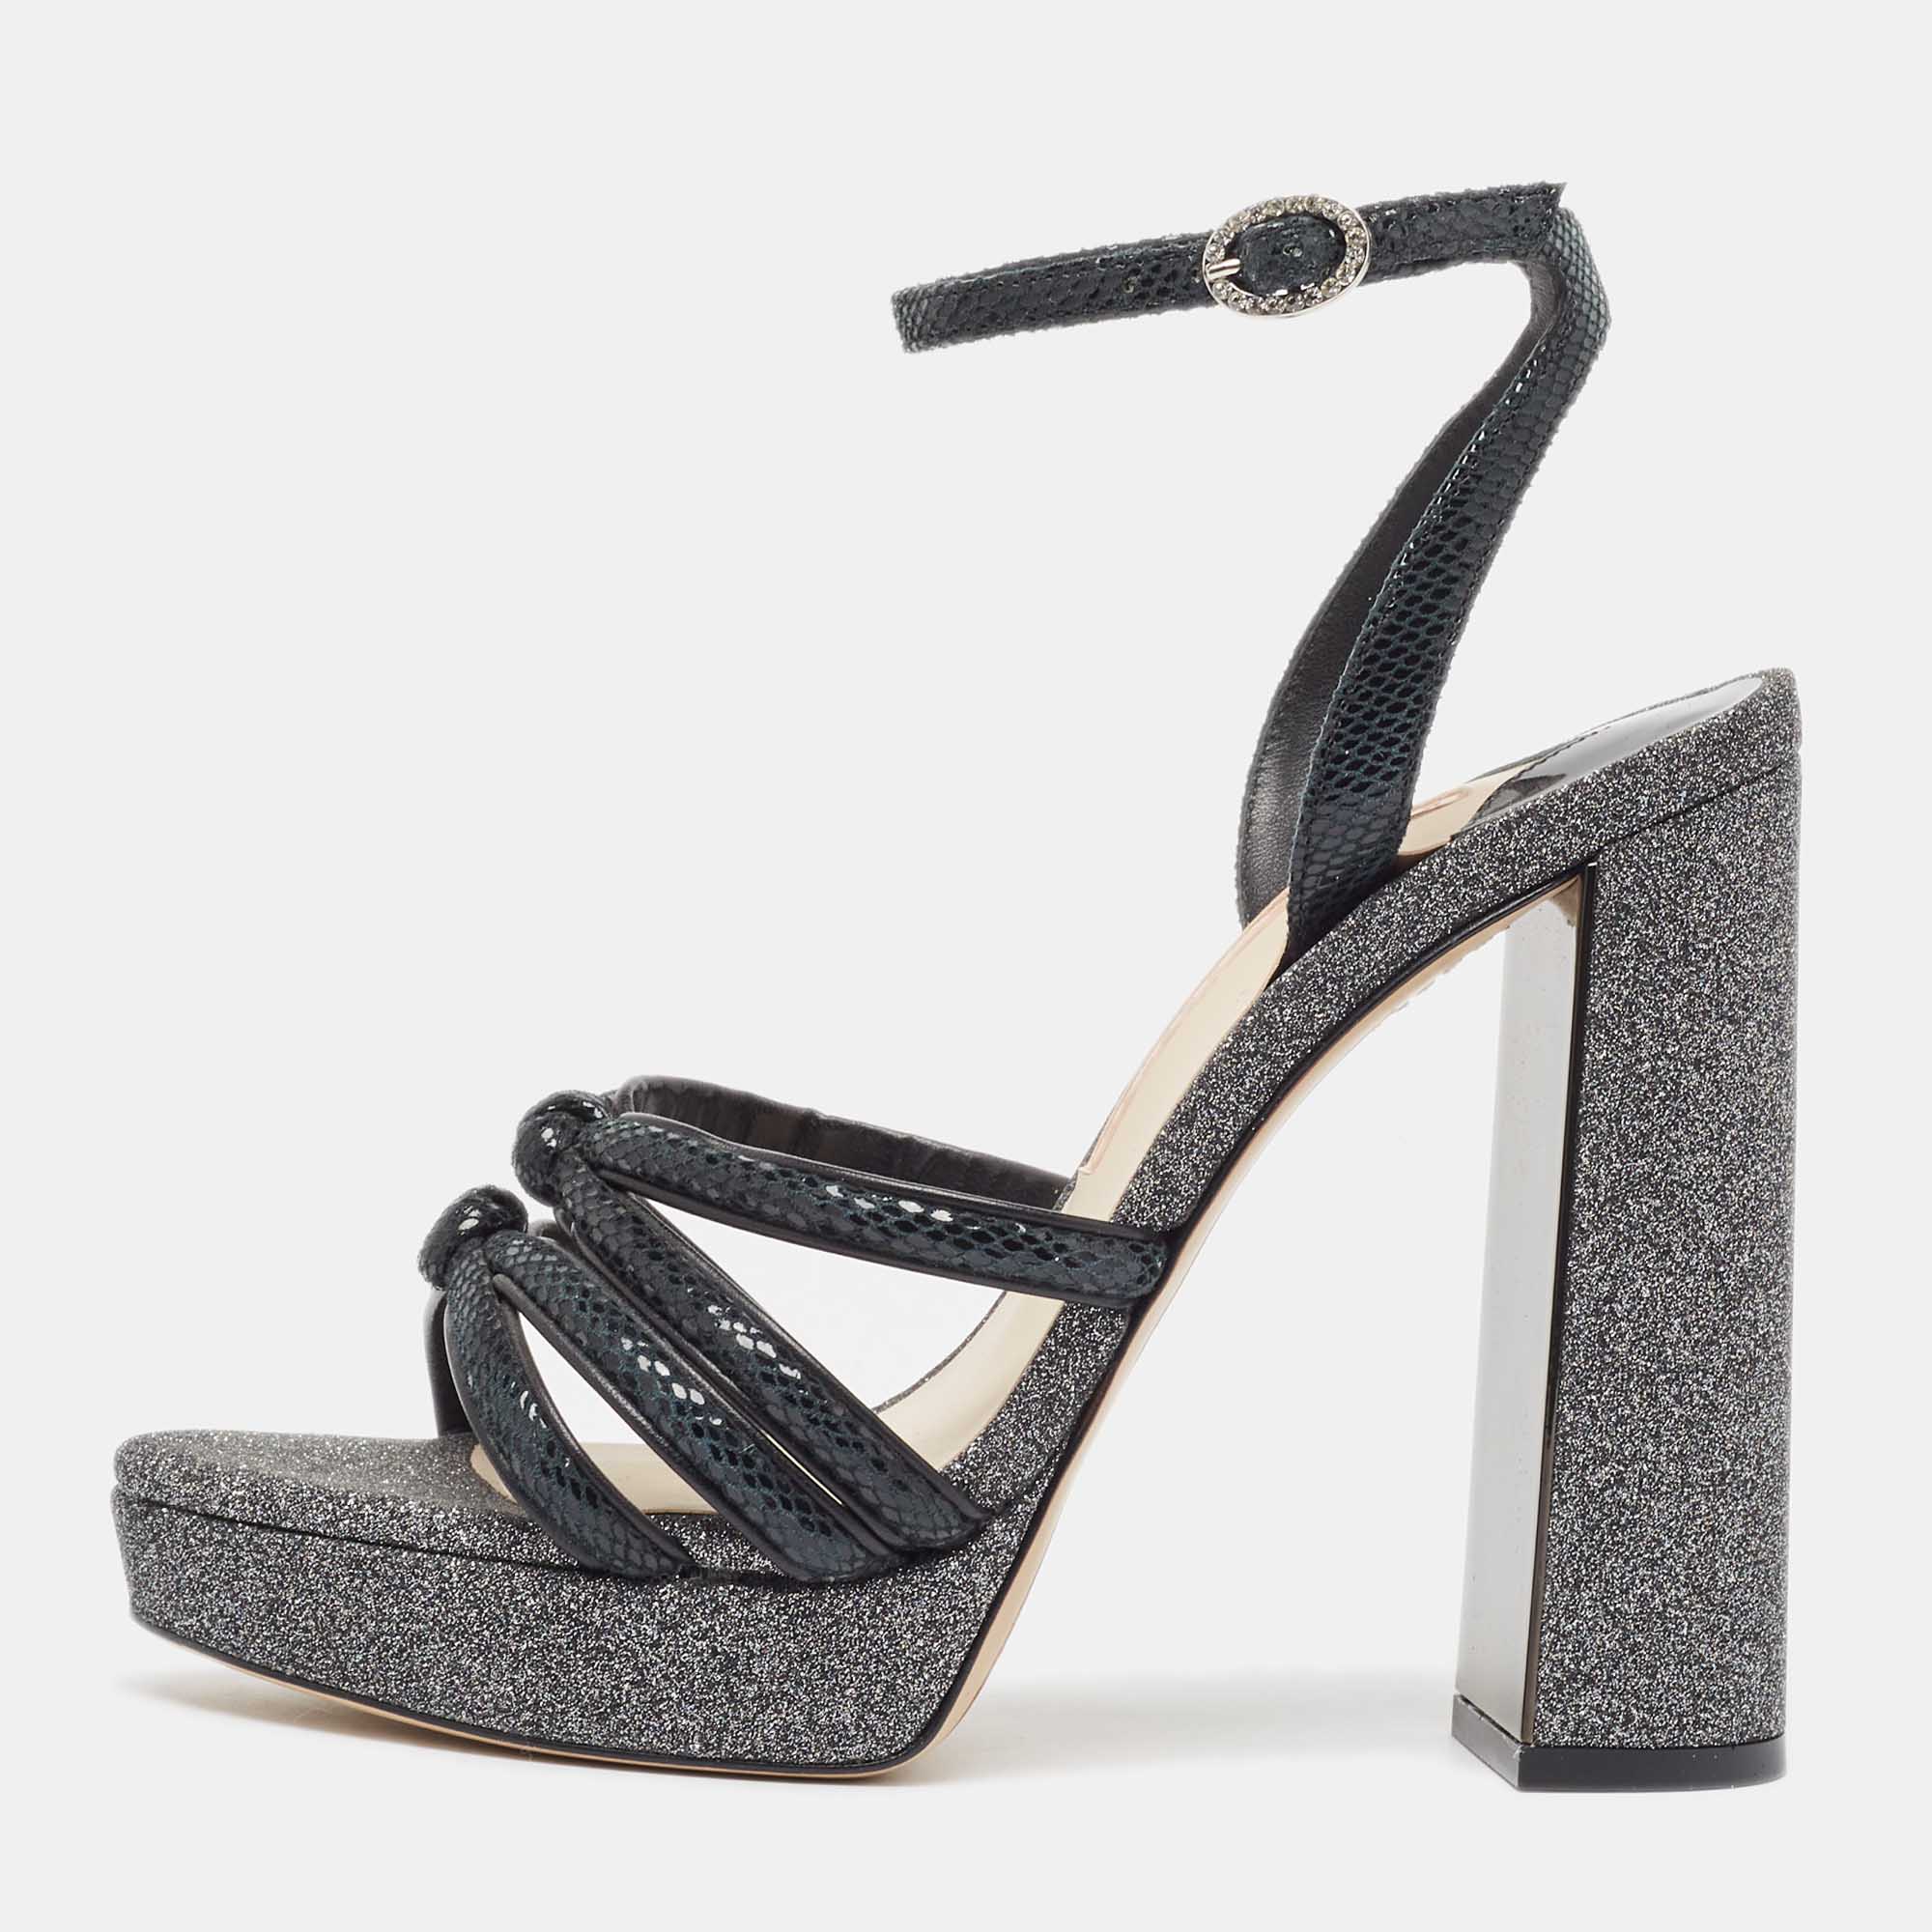 Sophia webster black textured suede and glitter freya platform block heel ankle strap sandals size 37